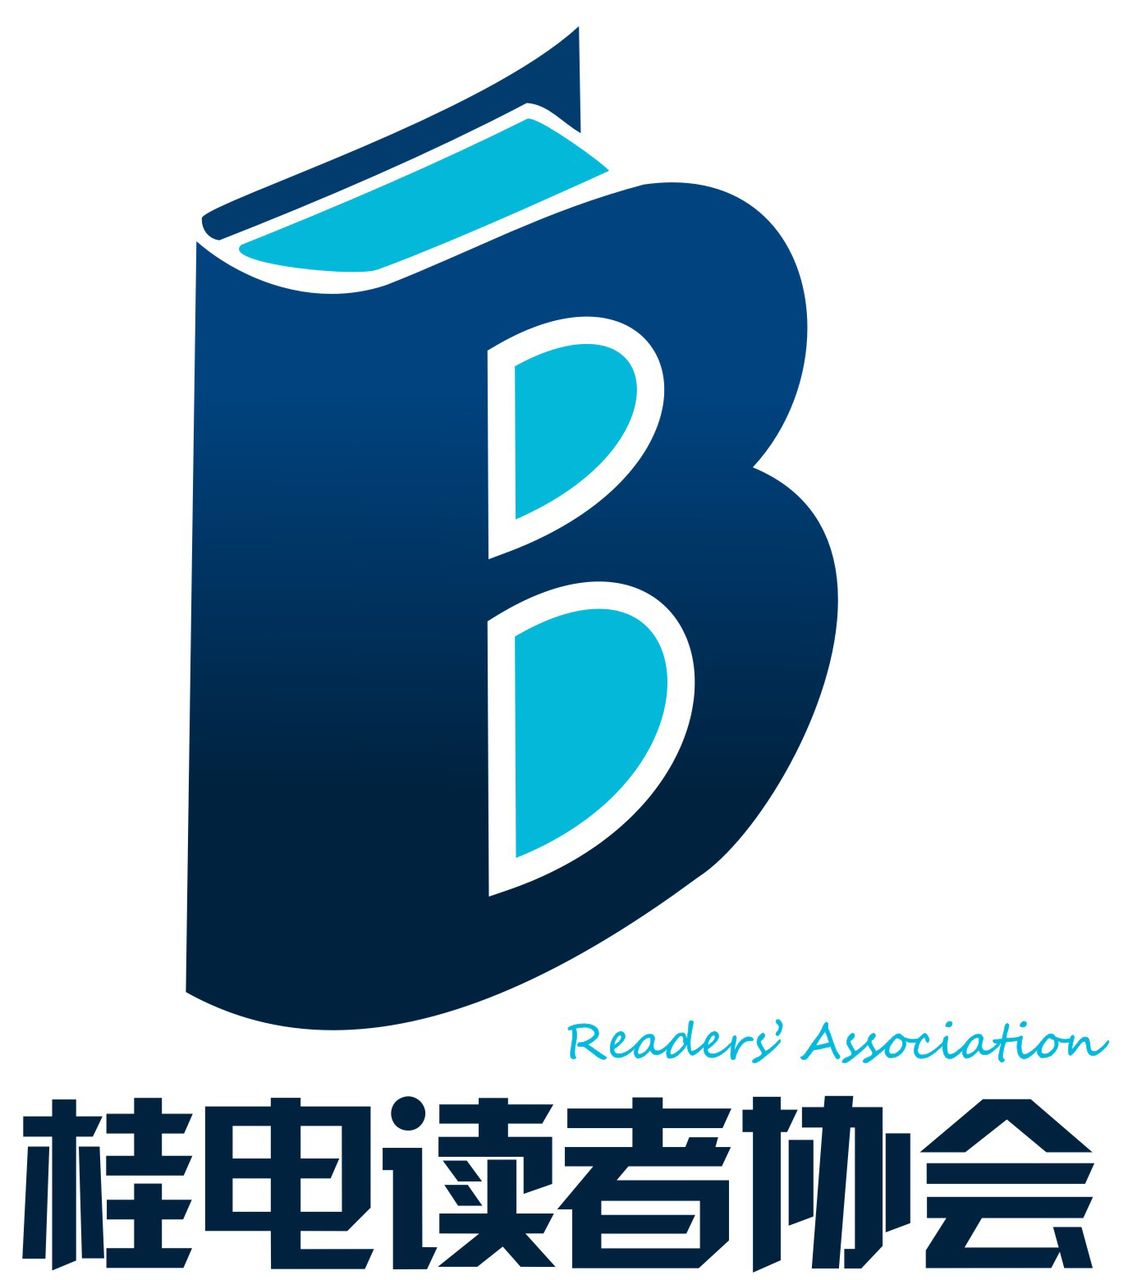 桂林電子科技大學讀者協會